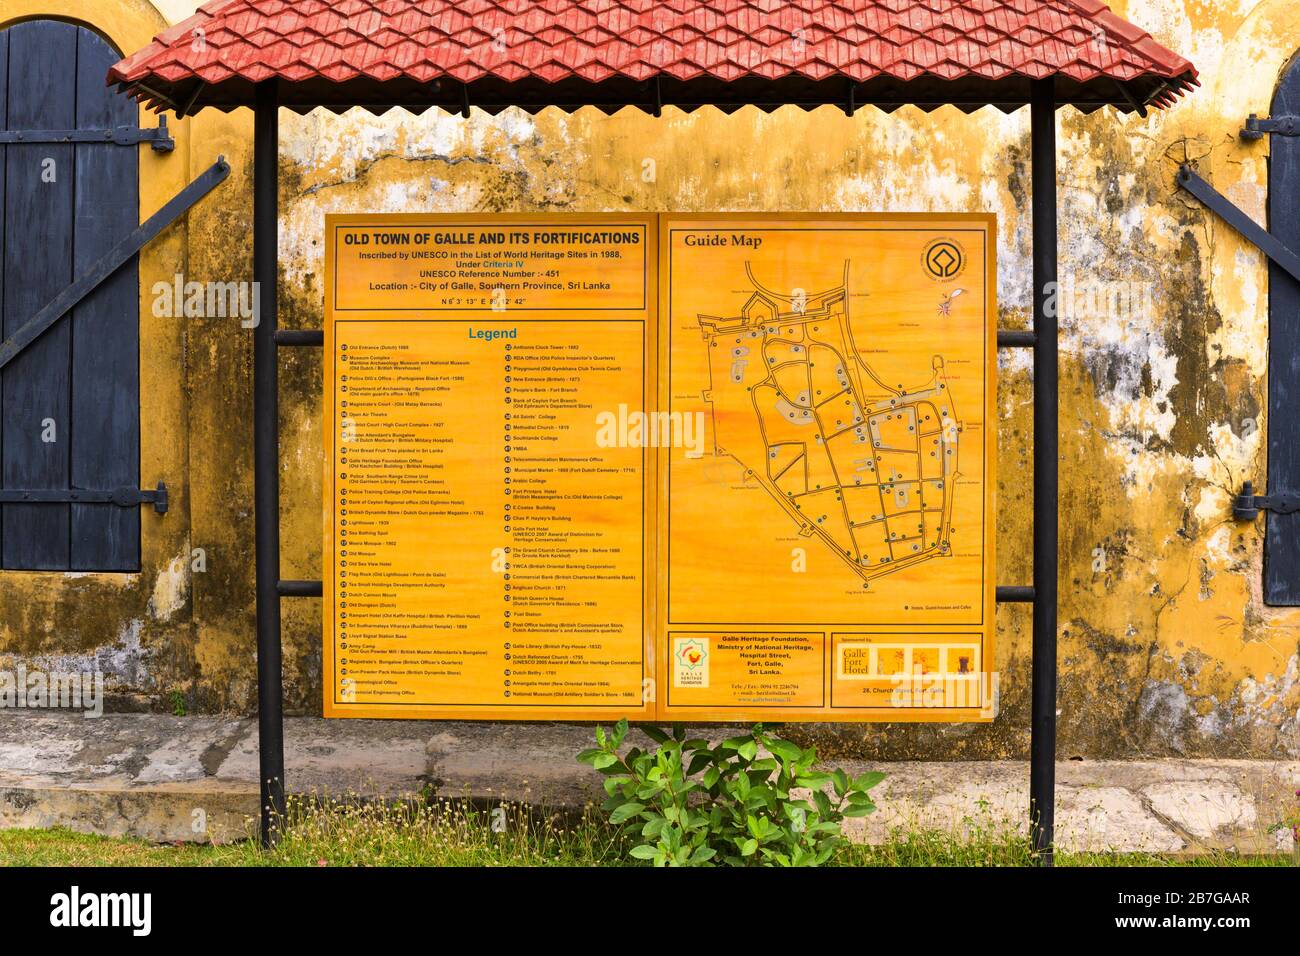 Sud Asia Sri Lanka Fort Galle centro coloniale antico porto porto porto mappa guida segno della città vecchia e fortificazioni Patrimonio dell'Umanità Sito muro della città Foto Stock